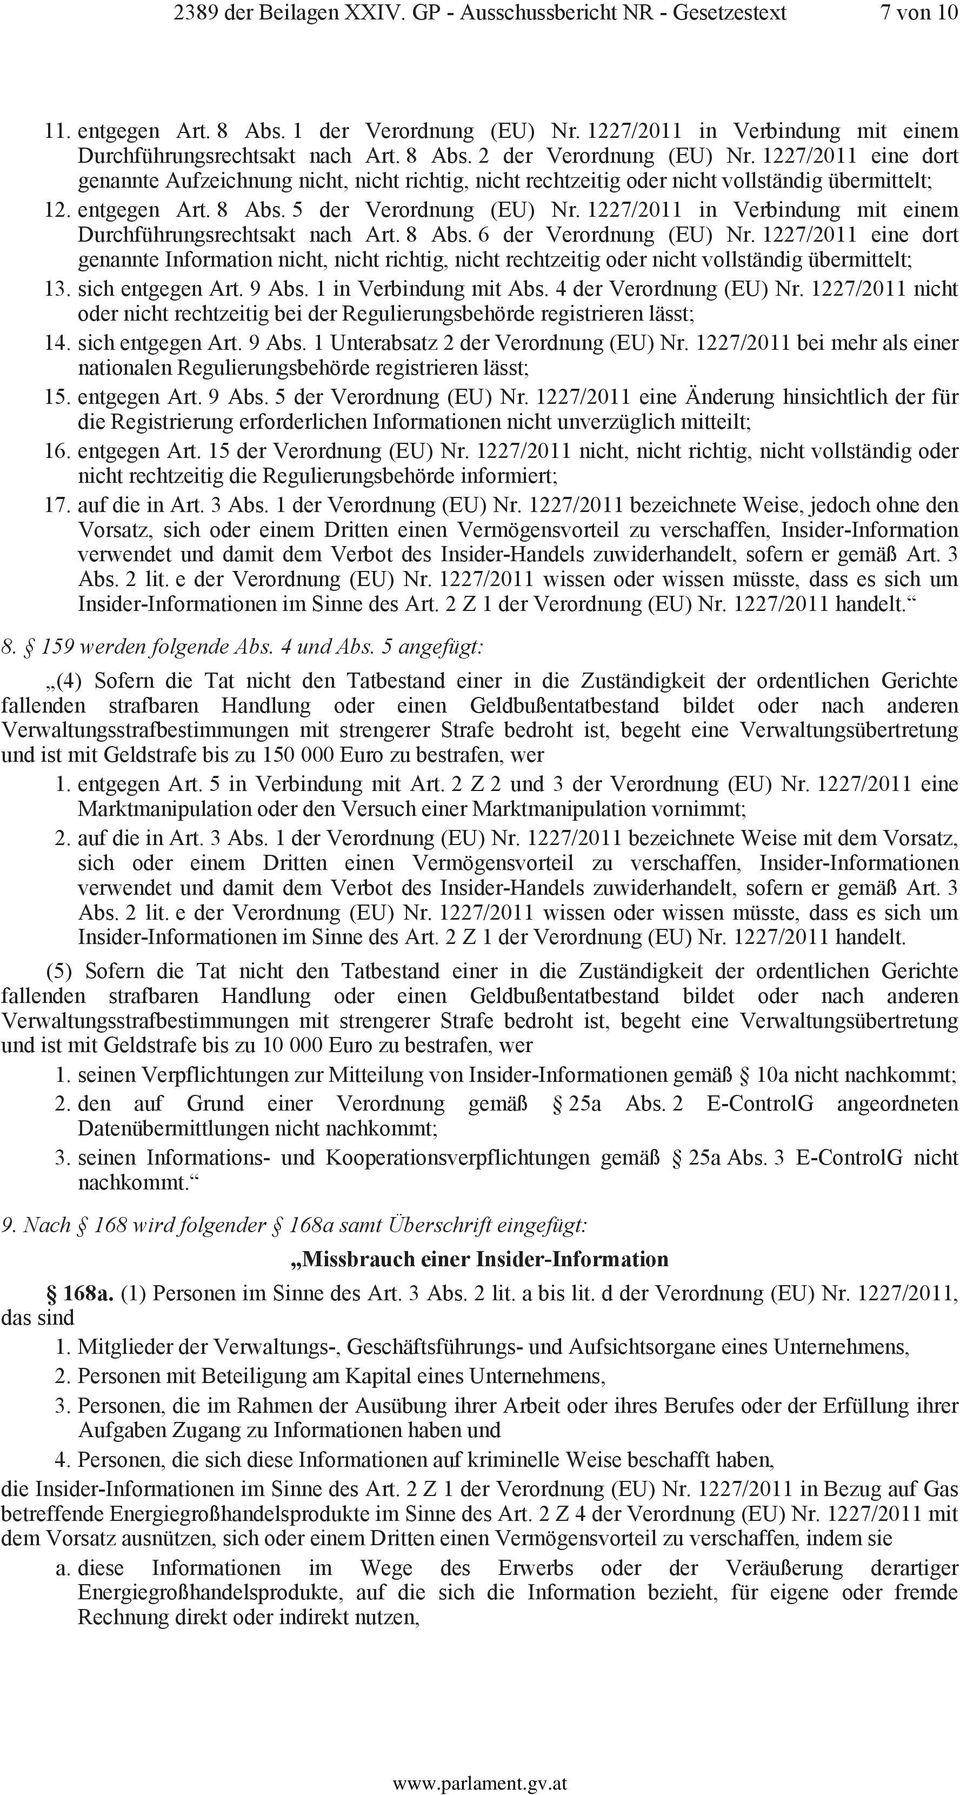 1227/2011 in Verbindung mit einem Durchführungsrechtsakt nach Art. 8 Abs. 6 der Verordnung (EU) Nr.